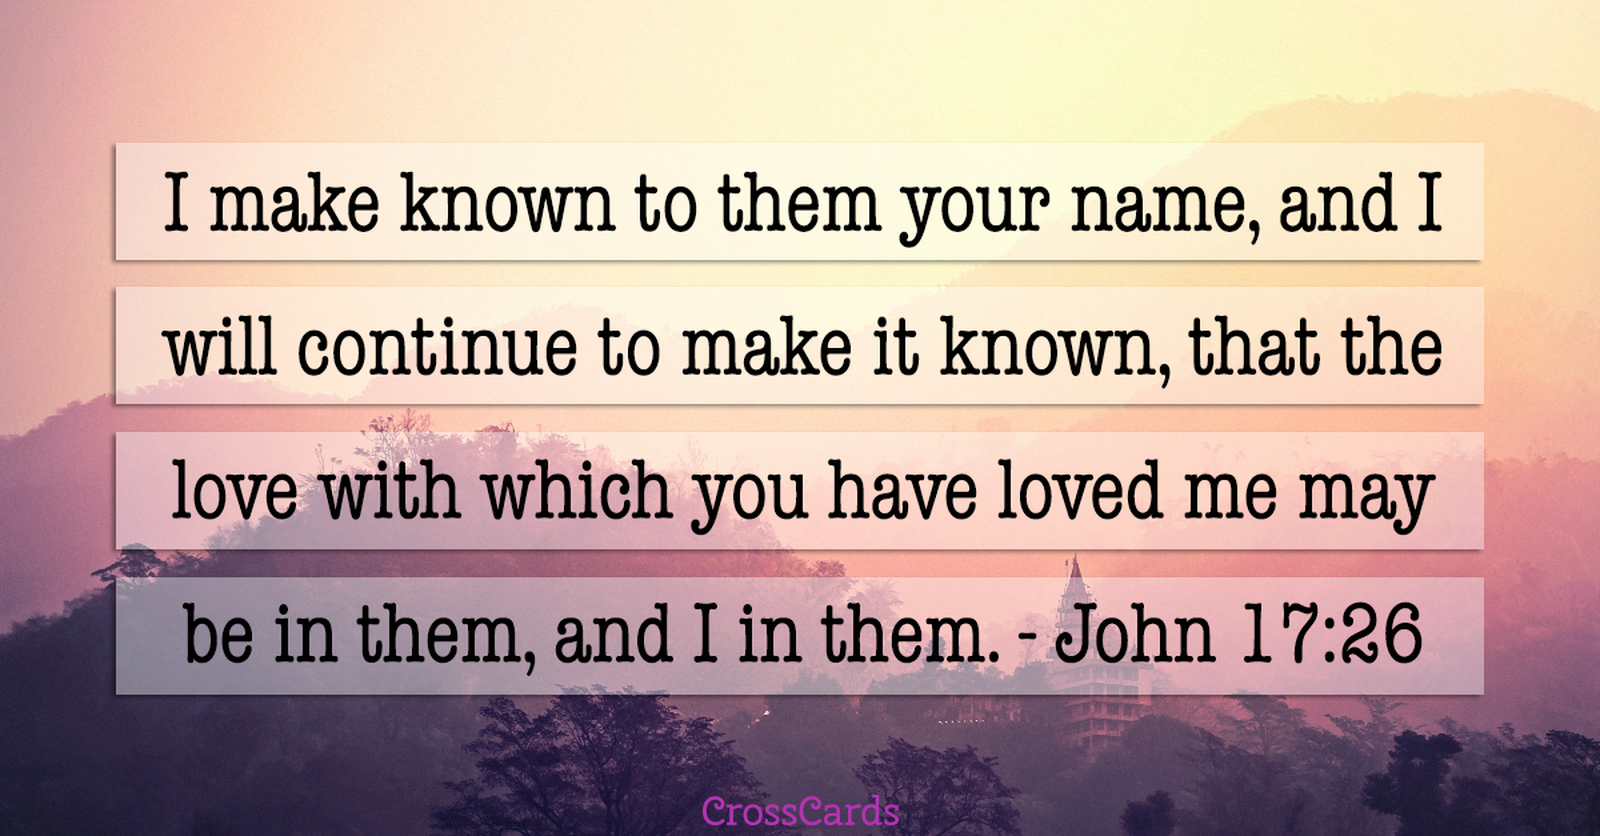 John 17:26